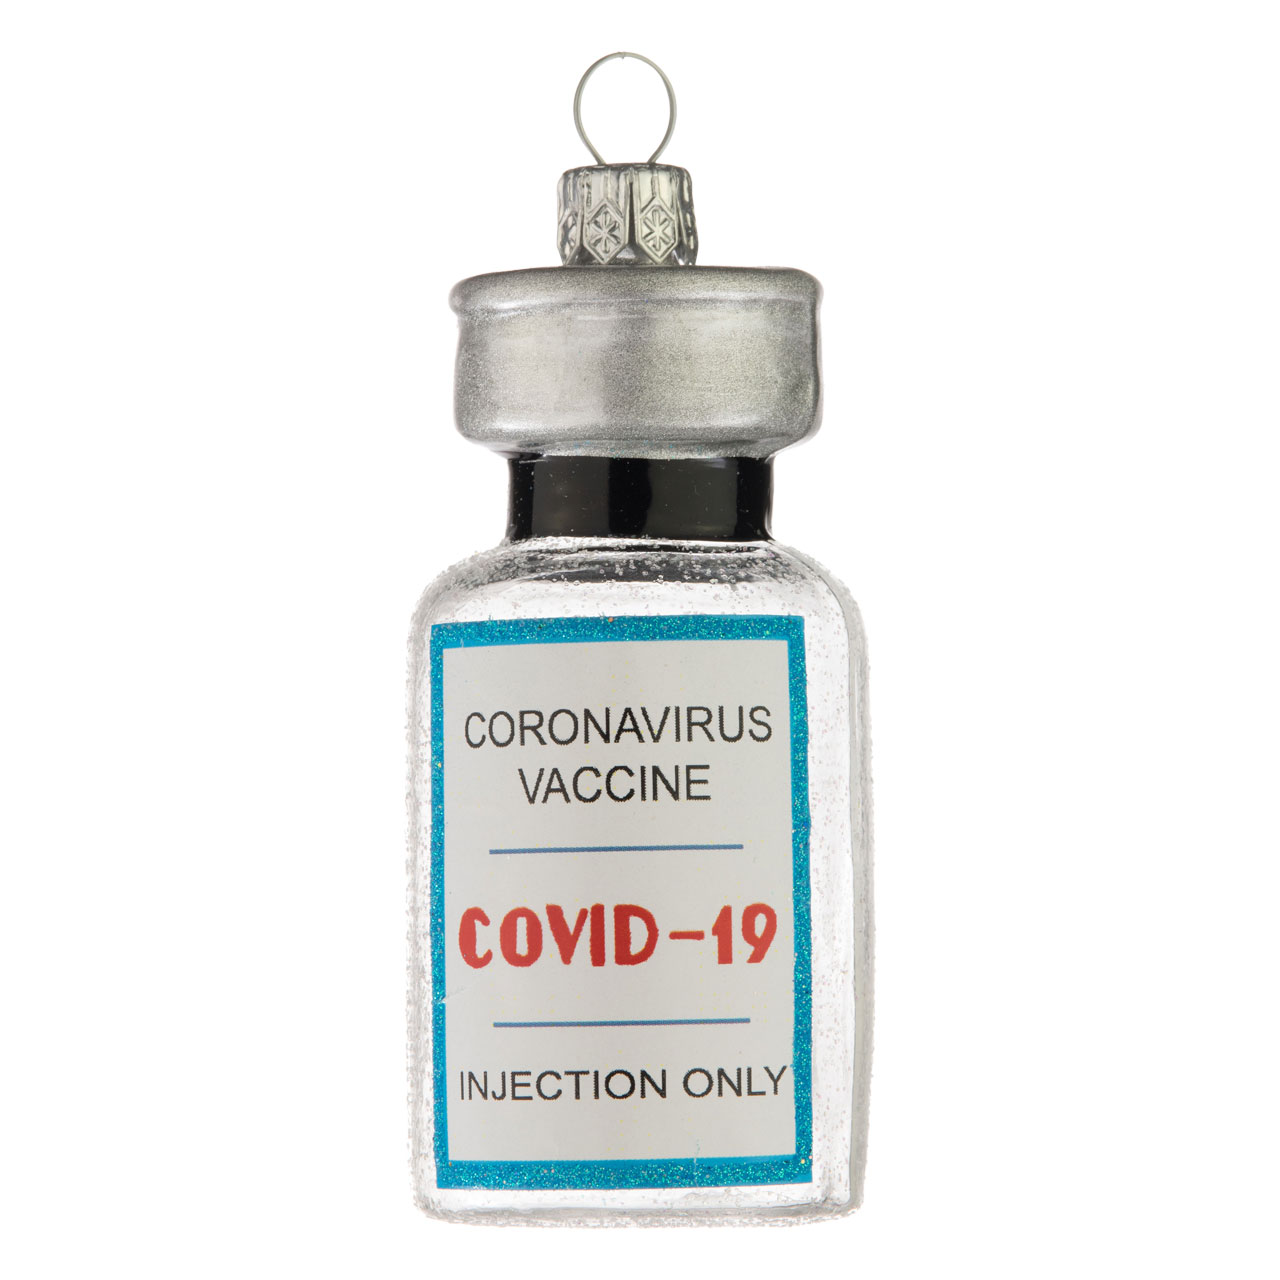 Vaccin Corona